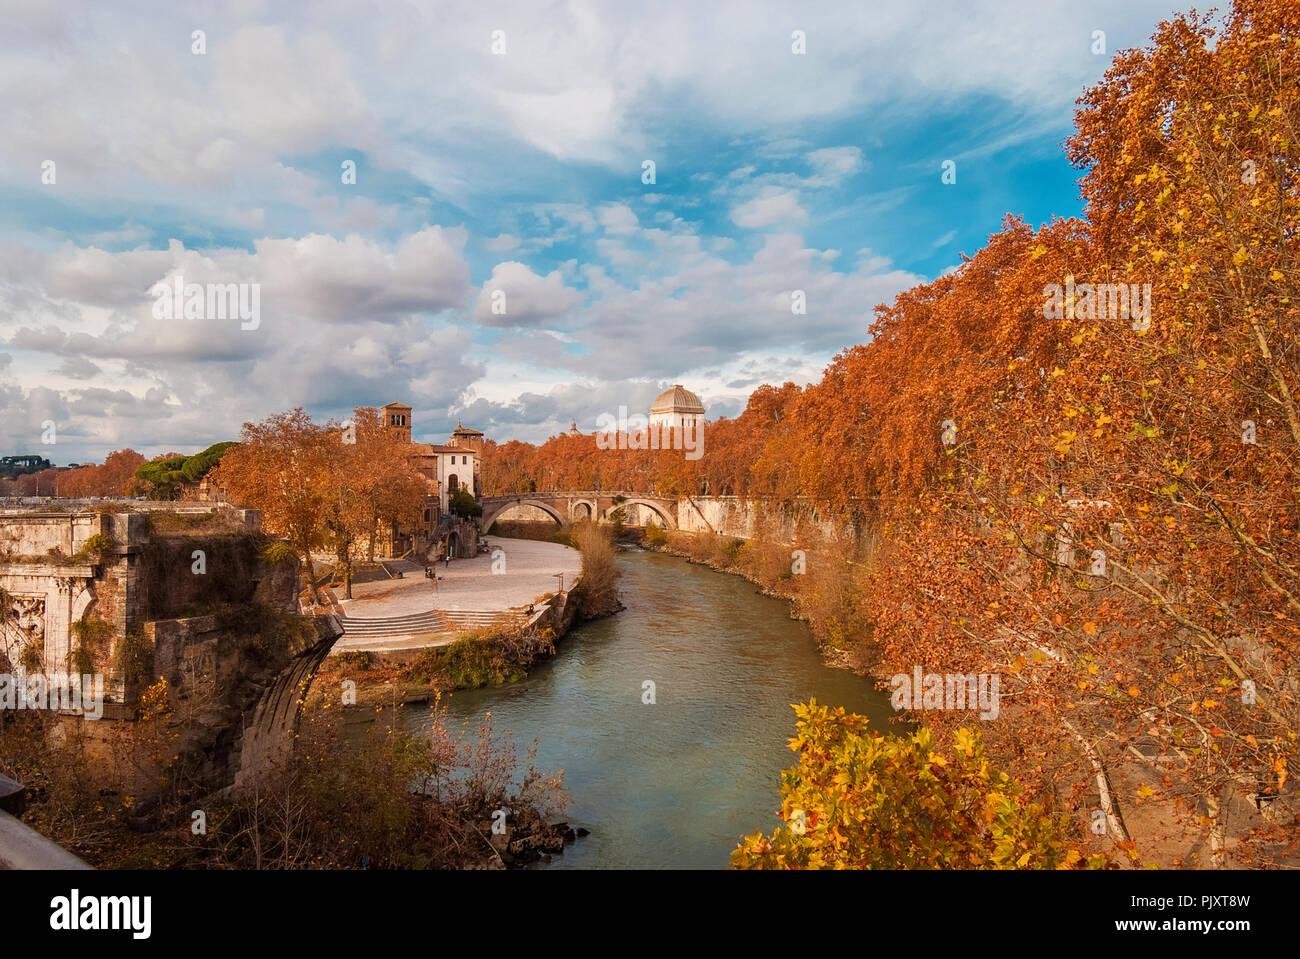 Herbst und Laub in Rom. Rote und gelbe Blätter in der Nähe der Tiberinsel mit antiken römischen Brücke, im historischen Zentrum der Stadt Stockfoto